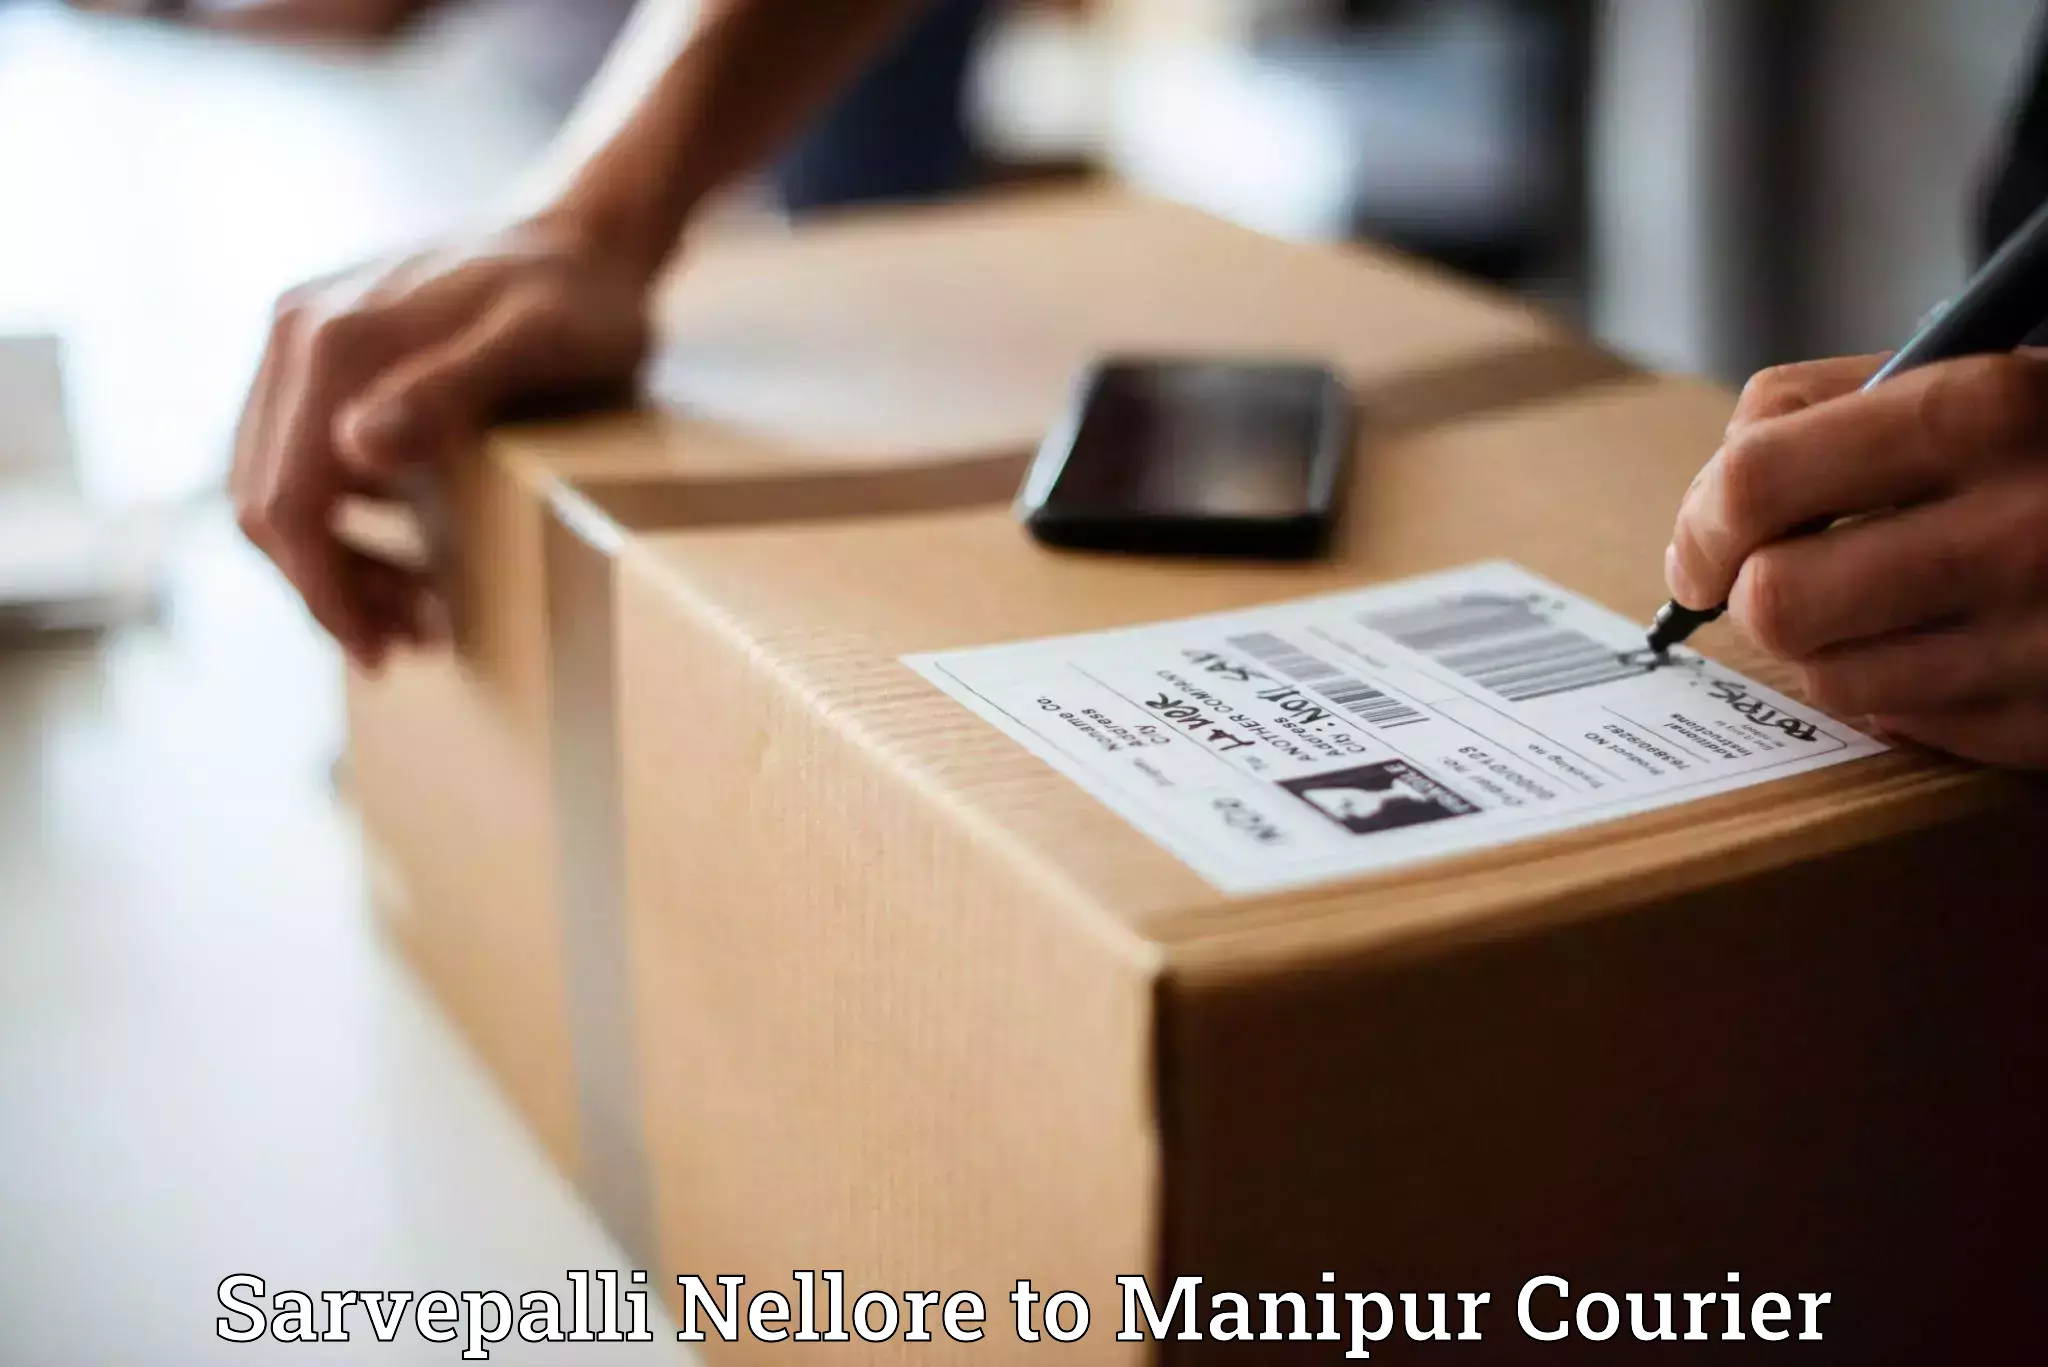 Speedy delivery service Sarvepalli Nellore to Senapati